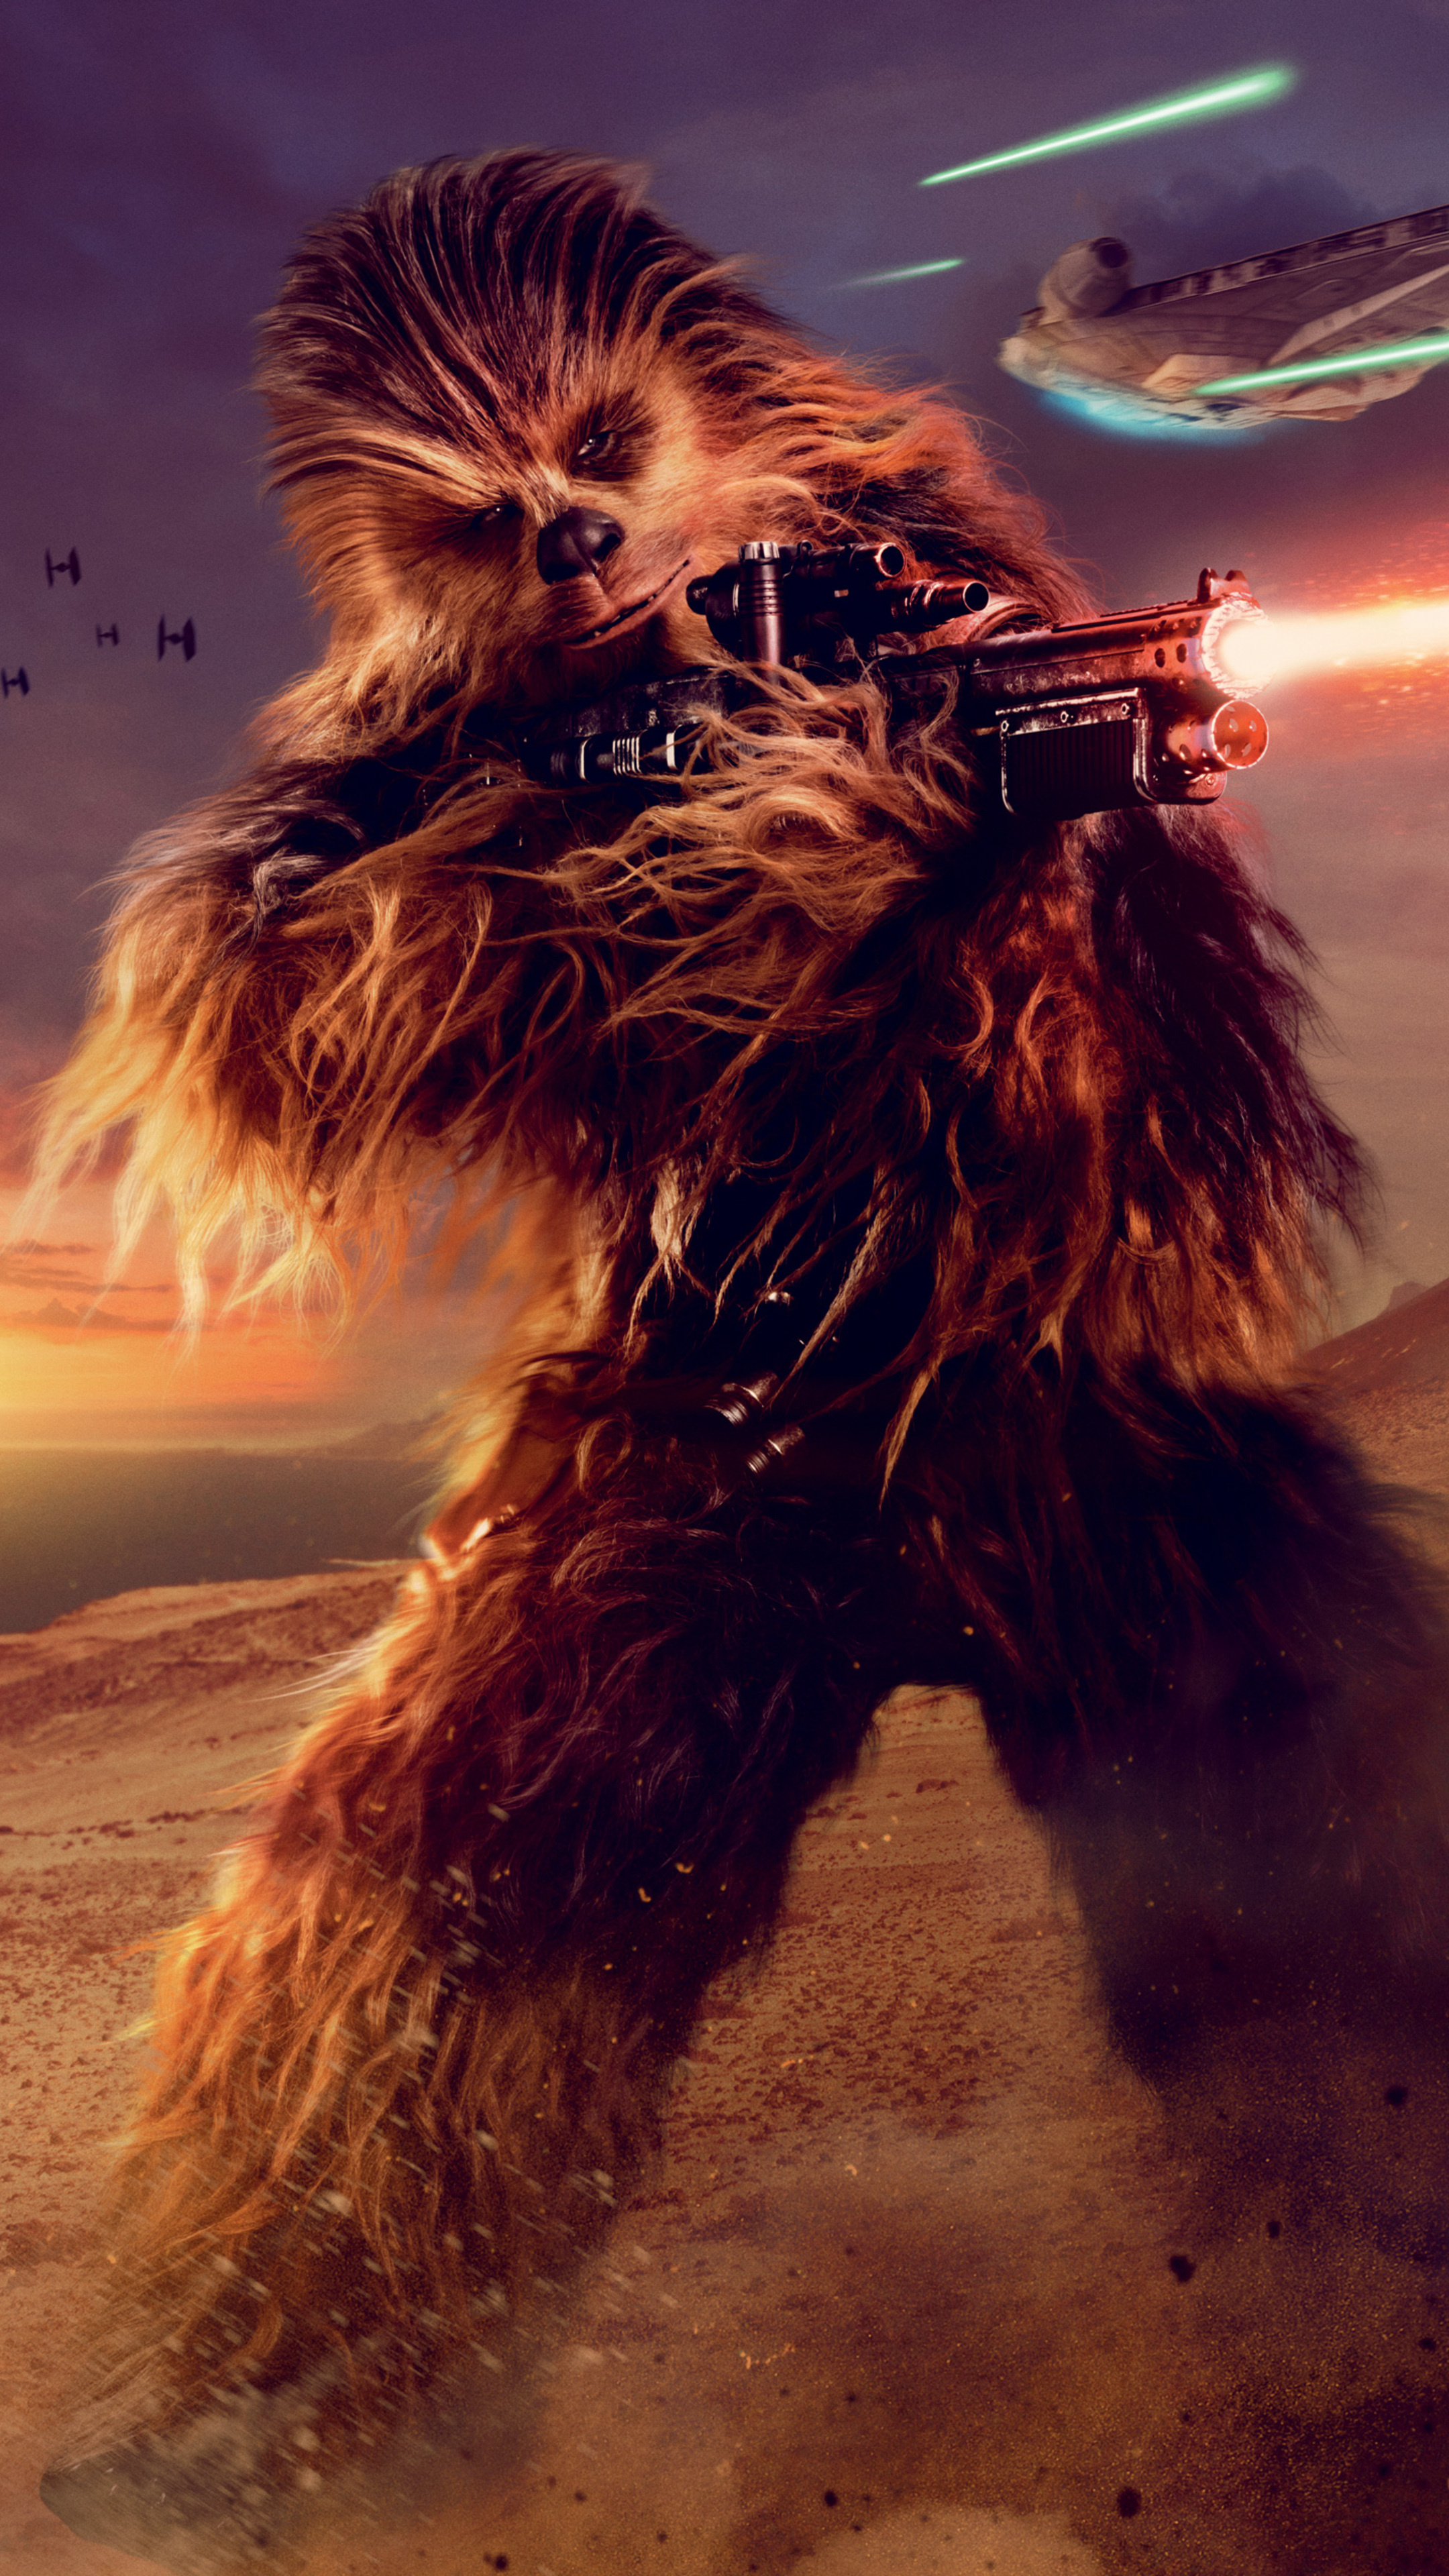 Chewie, Chewbacca in Solo, 5K Sony Xperia, 2160x3840 4K Handy